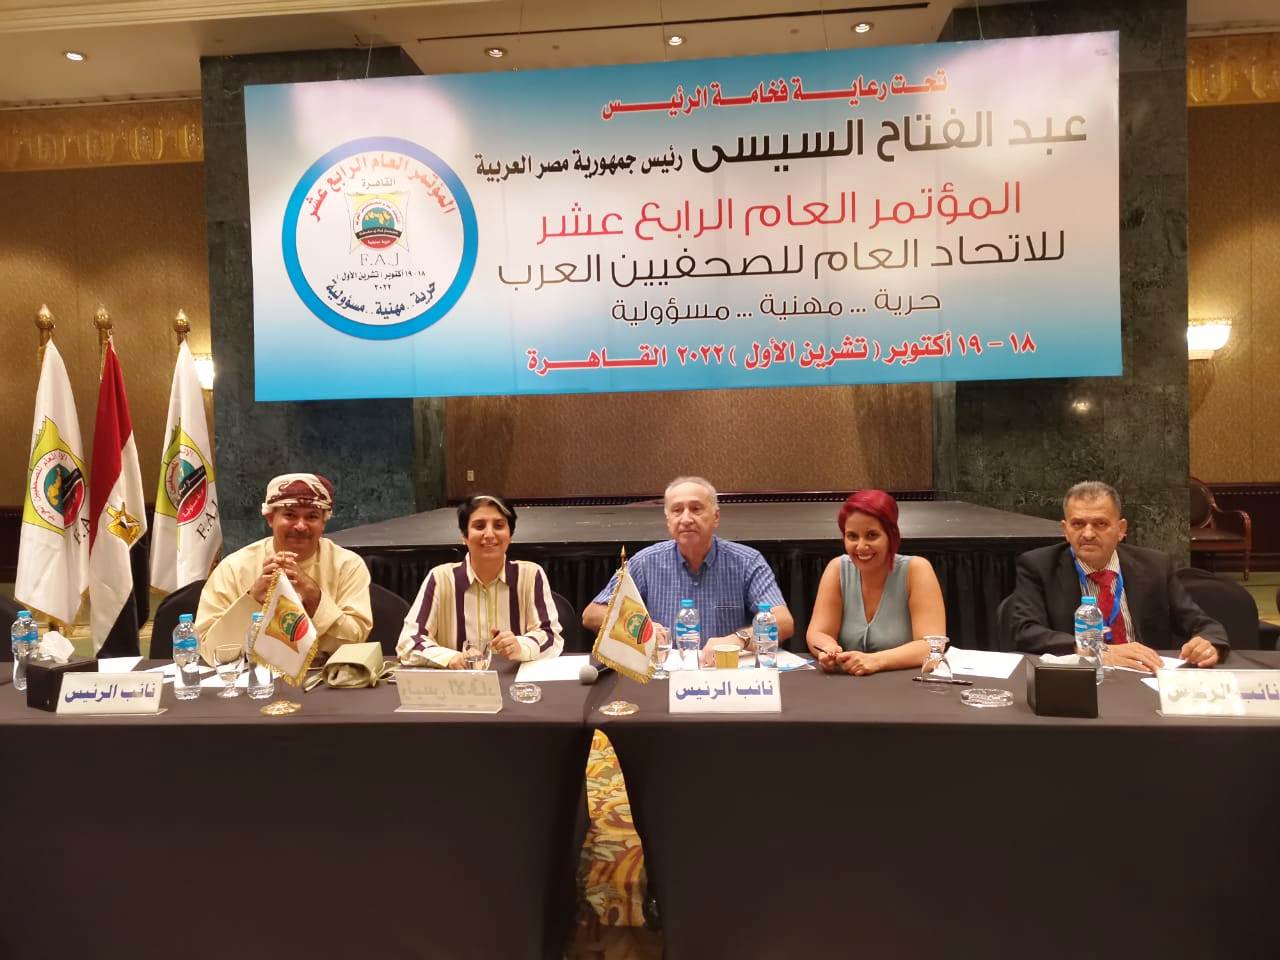 الزميل علي فريحات عضوا في لجنة ادارة انتخابات الصحفيين العرب